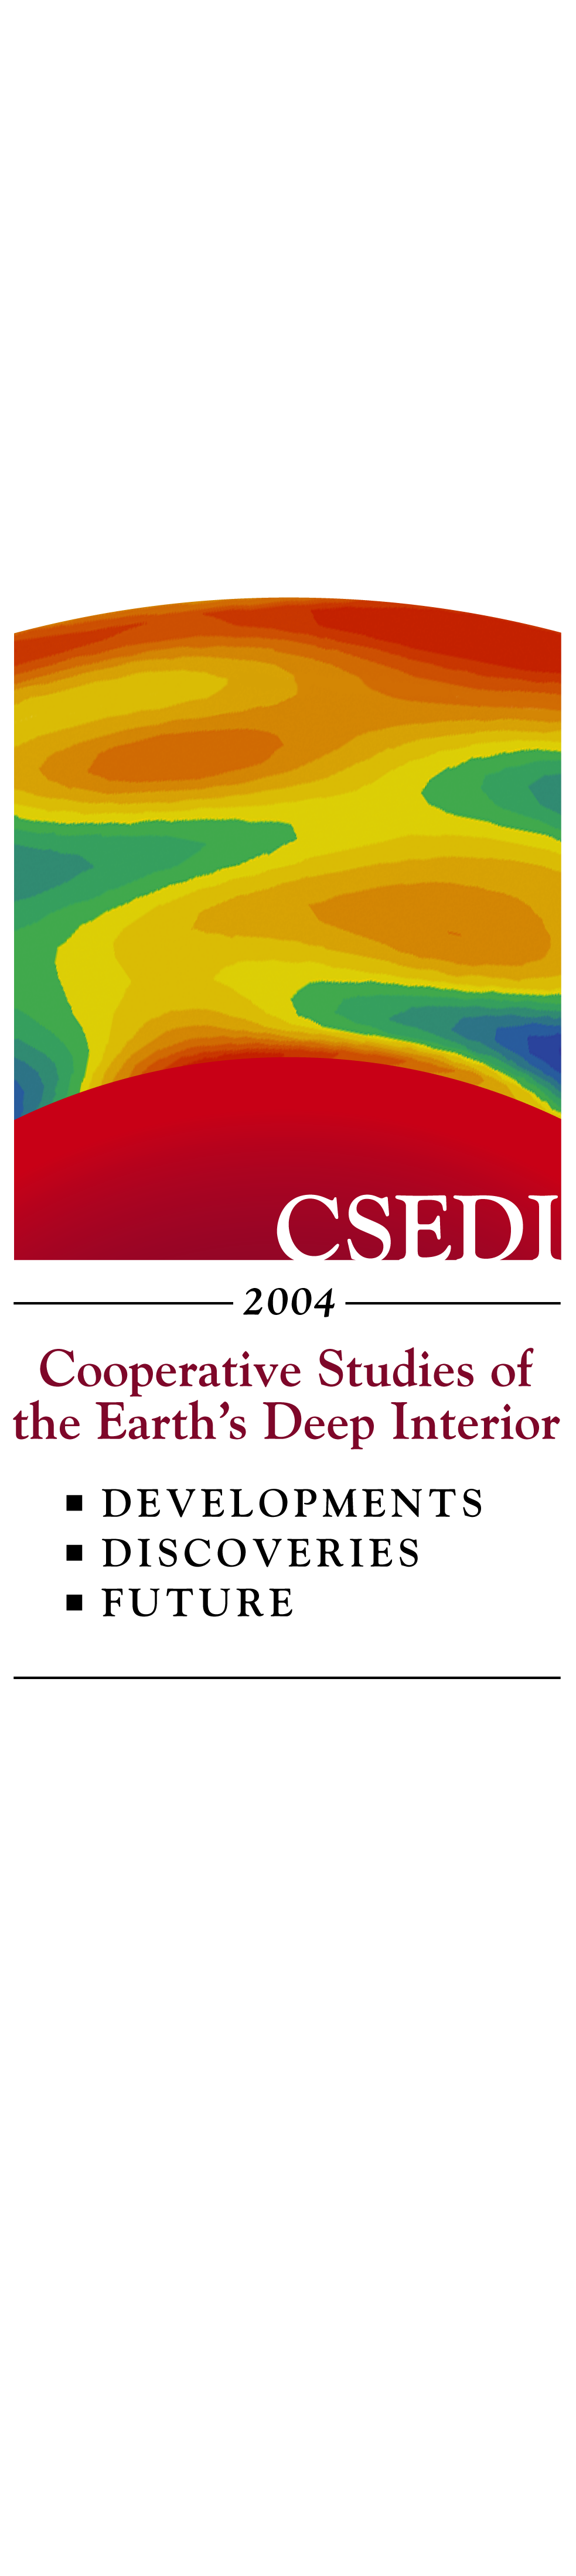 CSEDI Logo